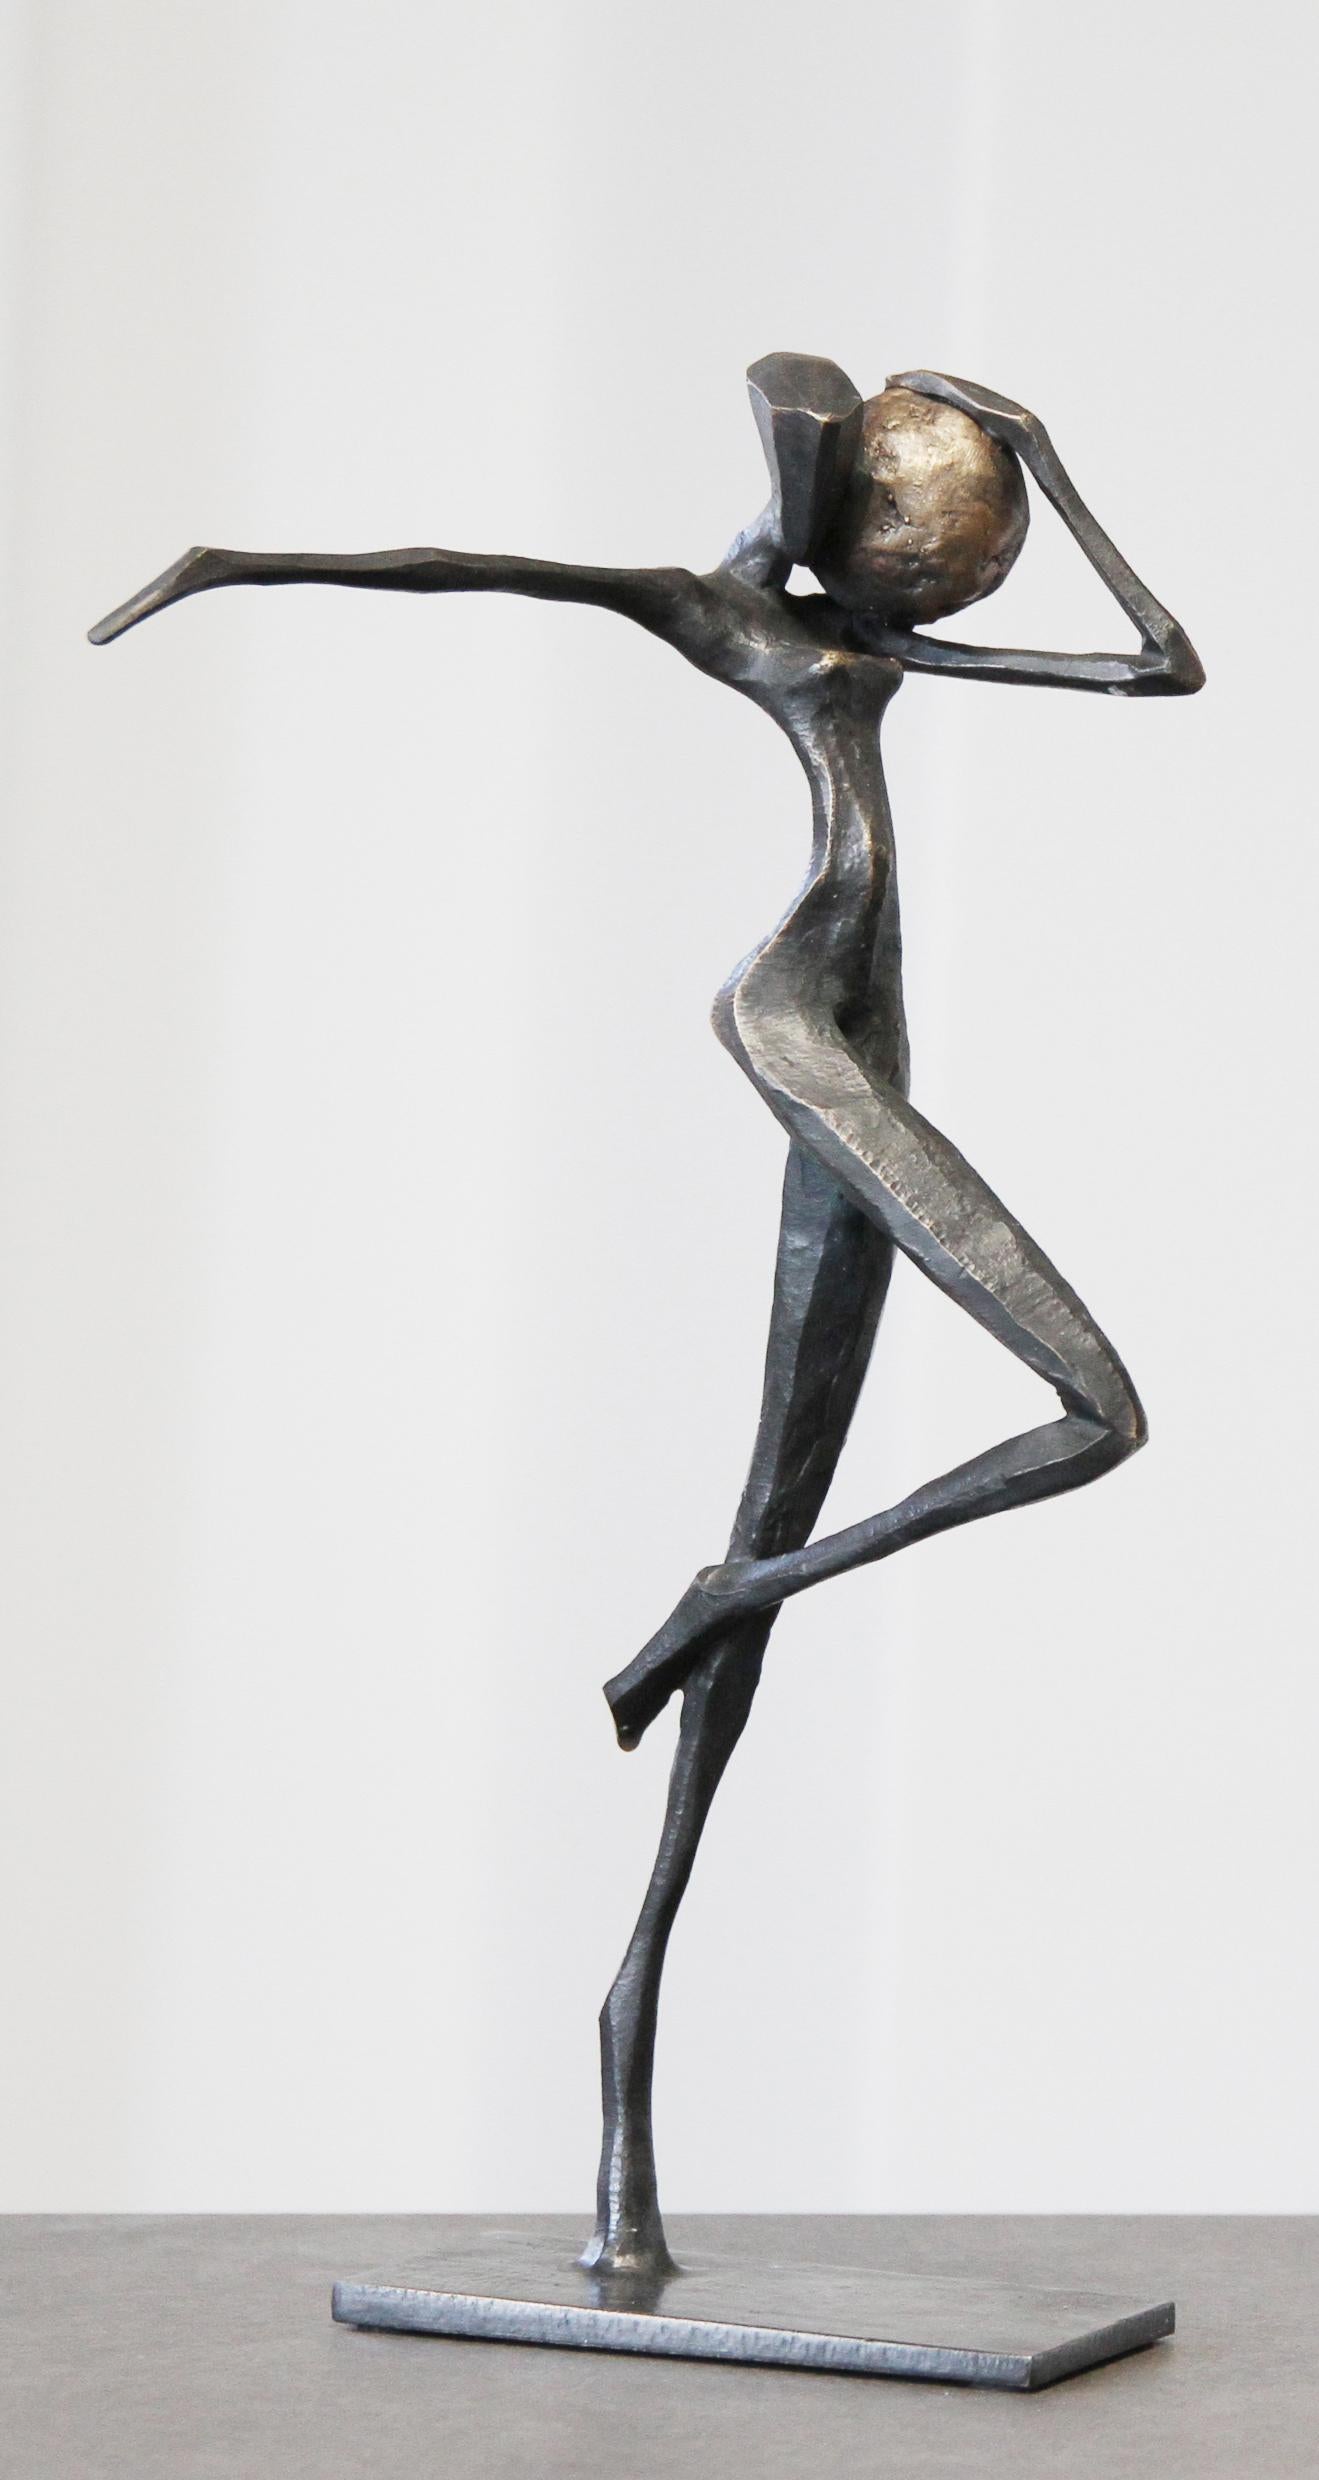 Gaea ist eine elegante figurative Bronzeskulptur von Nando Kallweit.

Der stilisierte ägyptisch angehauchte Kopf ist der modernen jugendlichen Haltung nachempfunden, verweist aber auch auf die Bedeutung des Erbes. Ein schönes Stück für sich allein